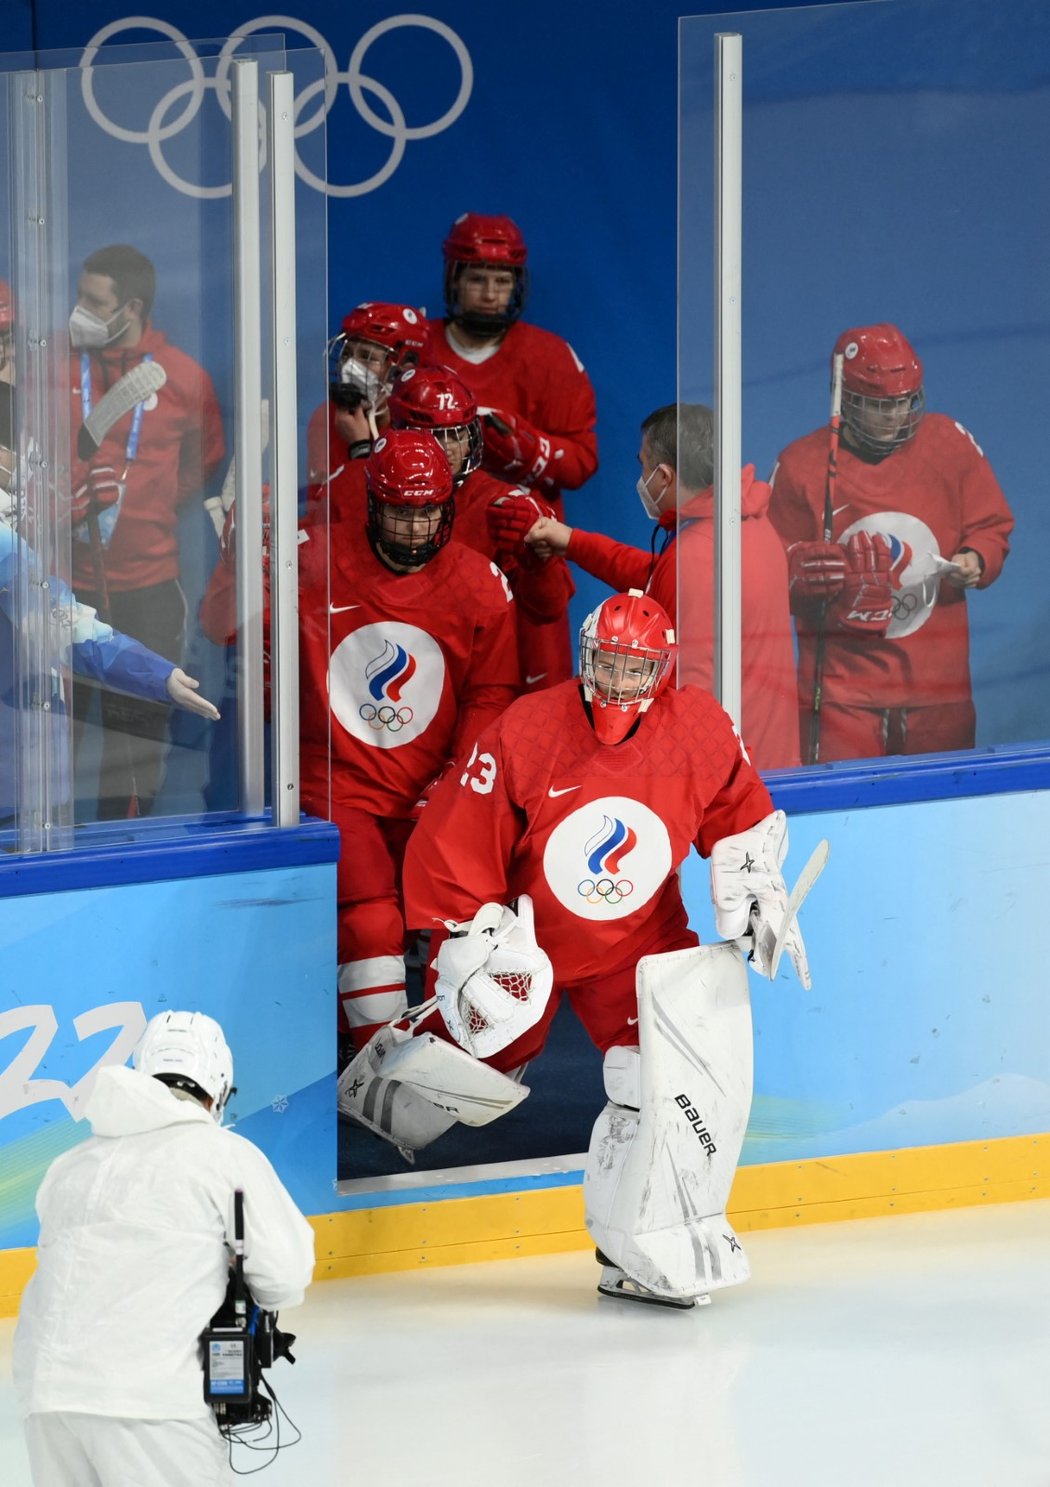 Ruský ženský hokejový tým nedodal výsledky testů soupeři, Kanada odmítala nastoupit